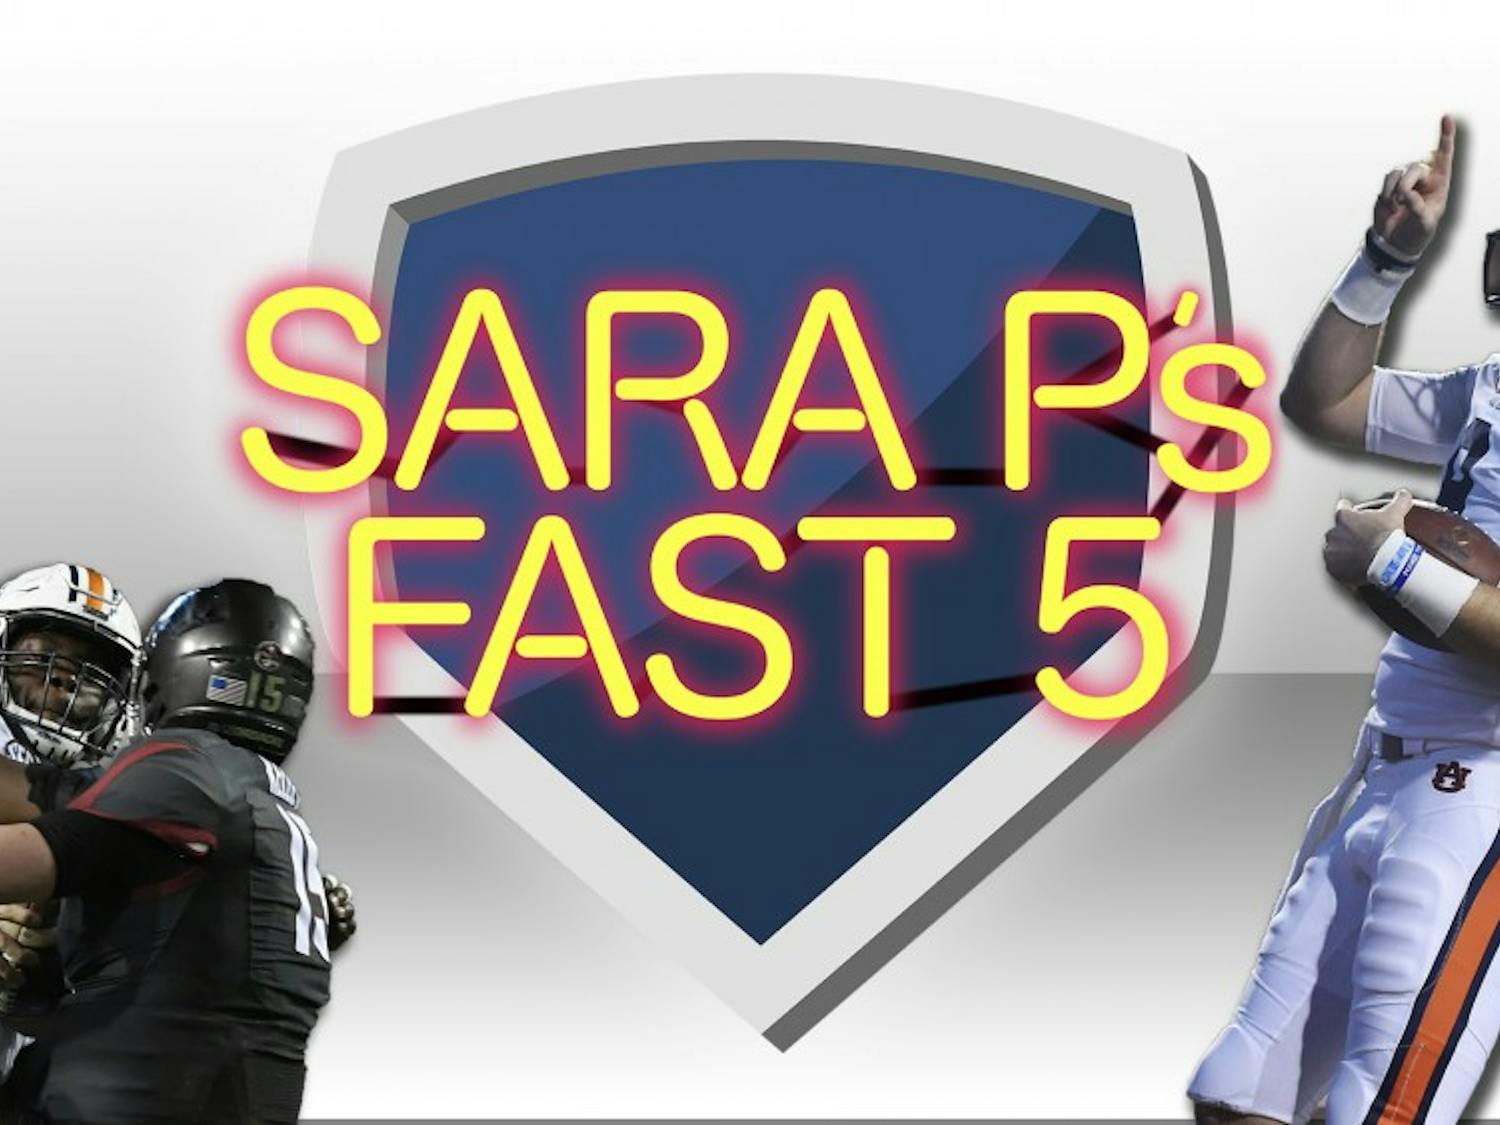 Sara P's Fast 5: Auburn defeats Arkansas